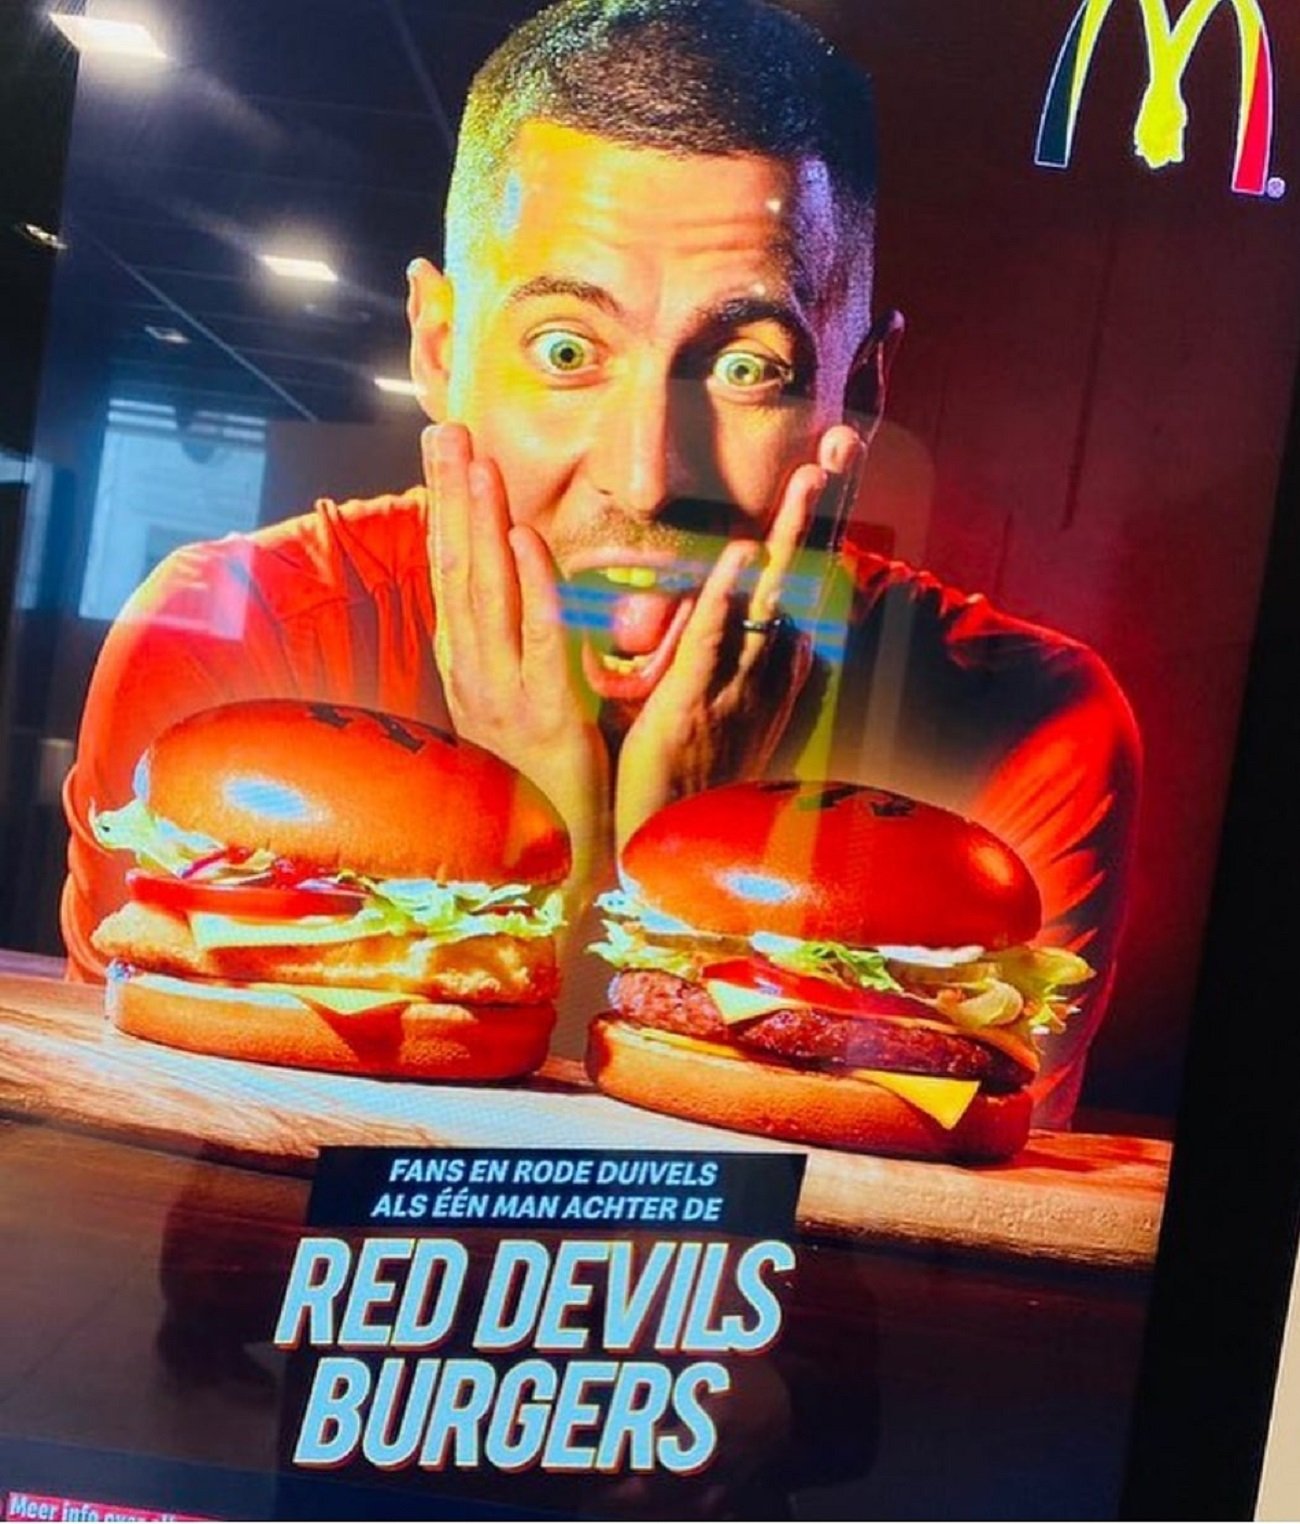 Sembla una broma: Hazard, protagonista d'un anunci d'hamburgueses